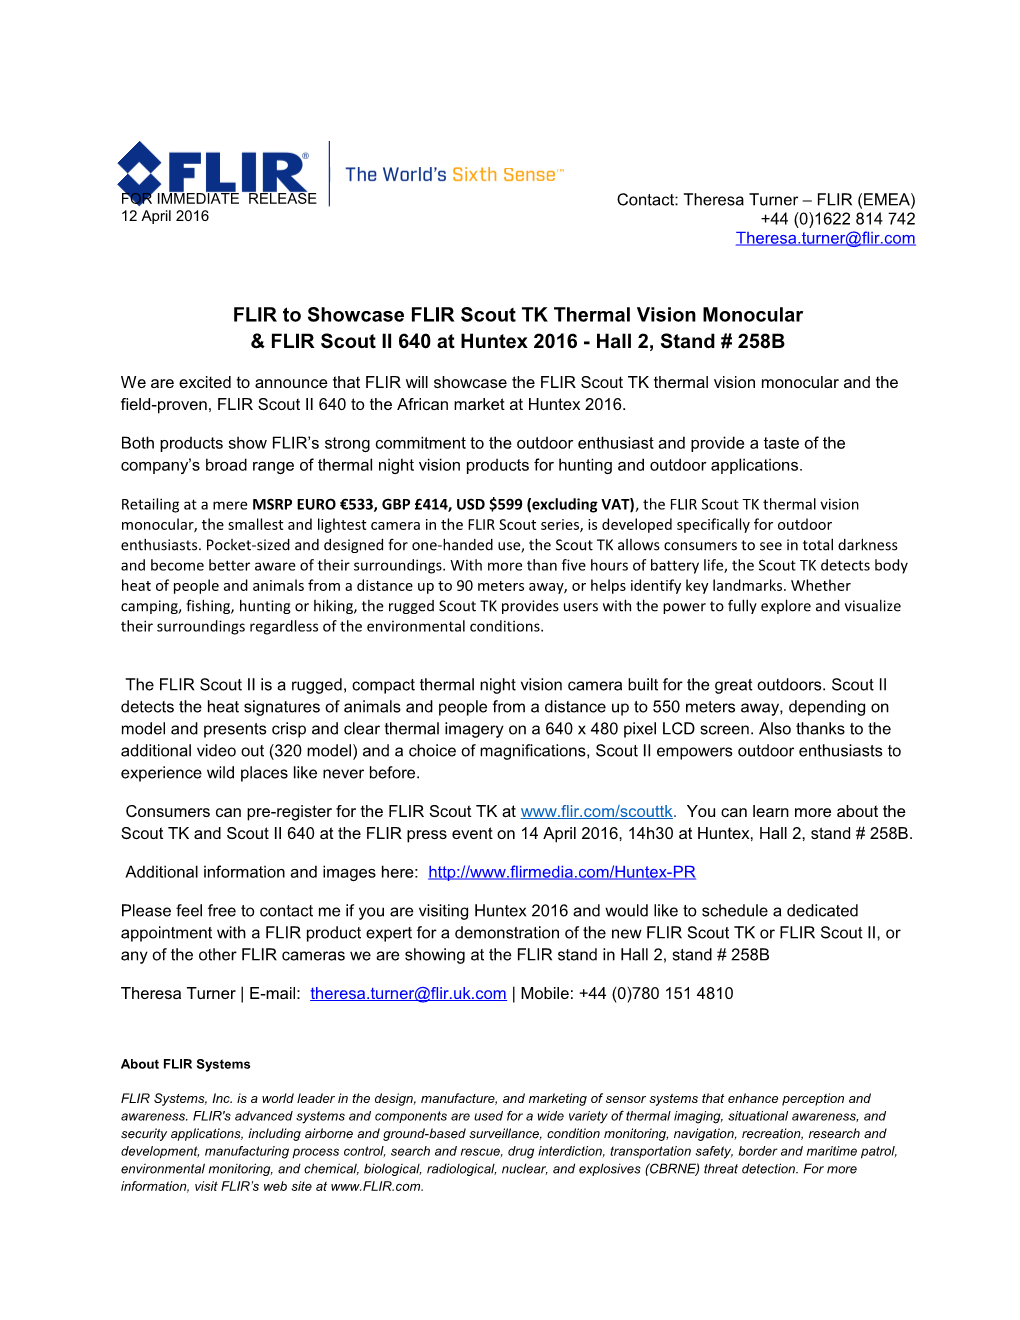 FLIR to Showcase FLIR Scout TK Thermal Vision Monocular & FLIR Scout II 640 at Huntex